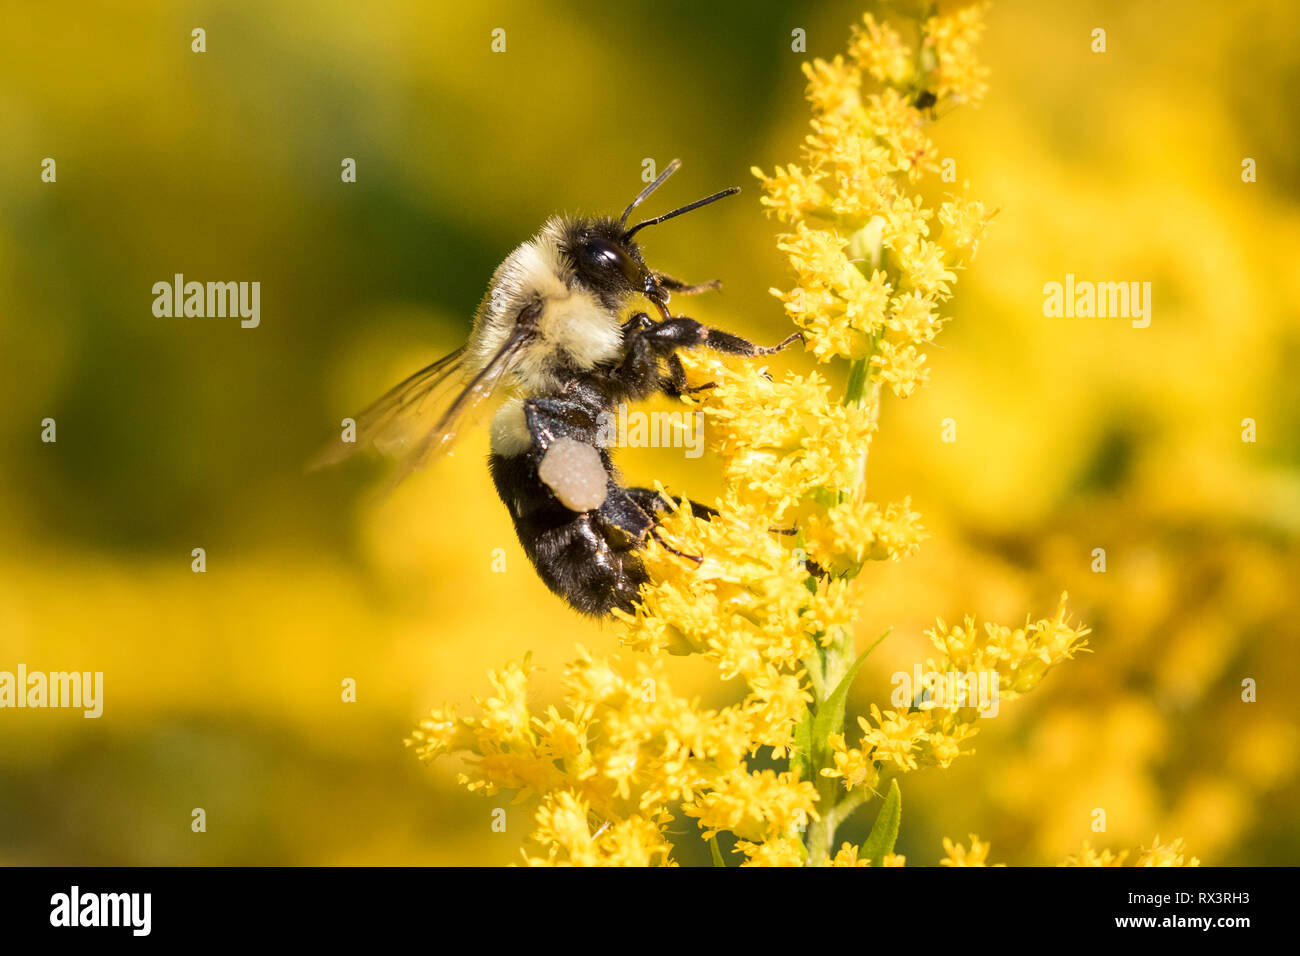 Orientale comune Bumble Bee (Bombus impatiens) con cesto di polline sulla zampa posteriore, Toronto, Ontario, Canada Foto Stock